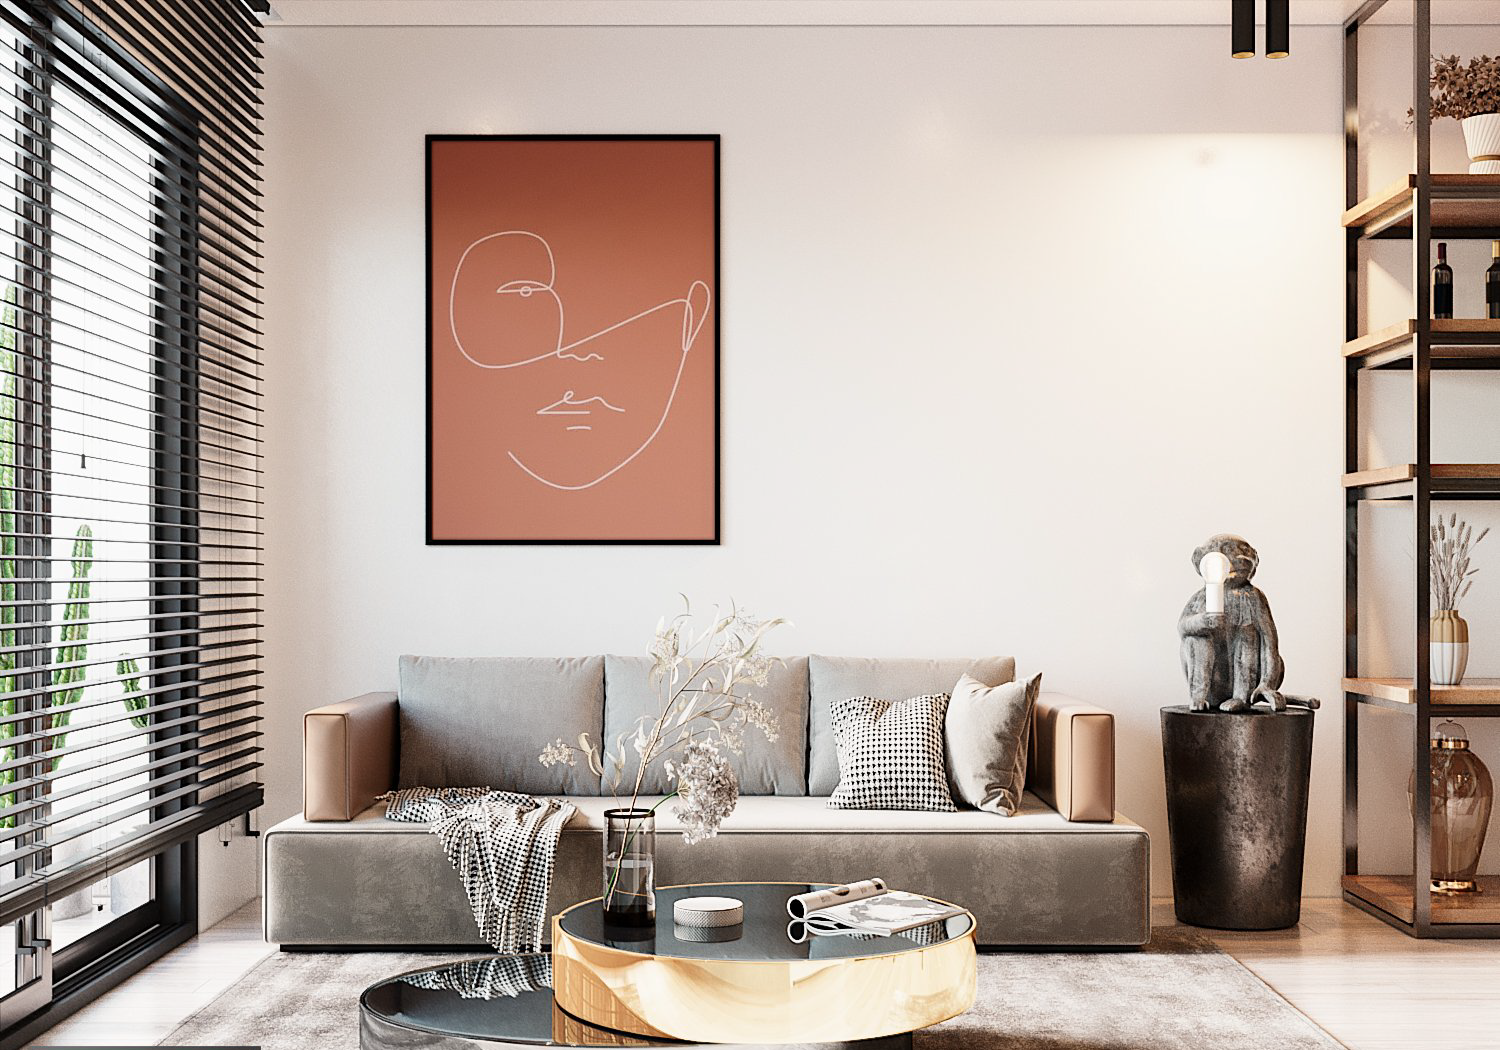 Phòng khách căn hộ 68m2 được bài trí theo phong cách hiện đại, tối giản với ghế sofa màu xám trang nhã, bàn trà hình khối ấn tượng